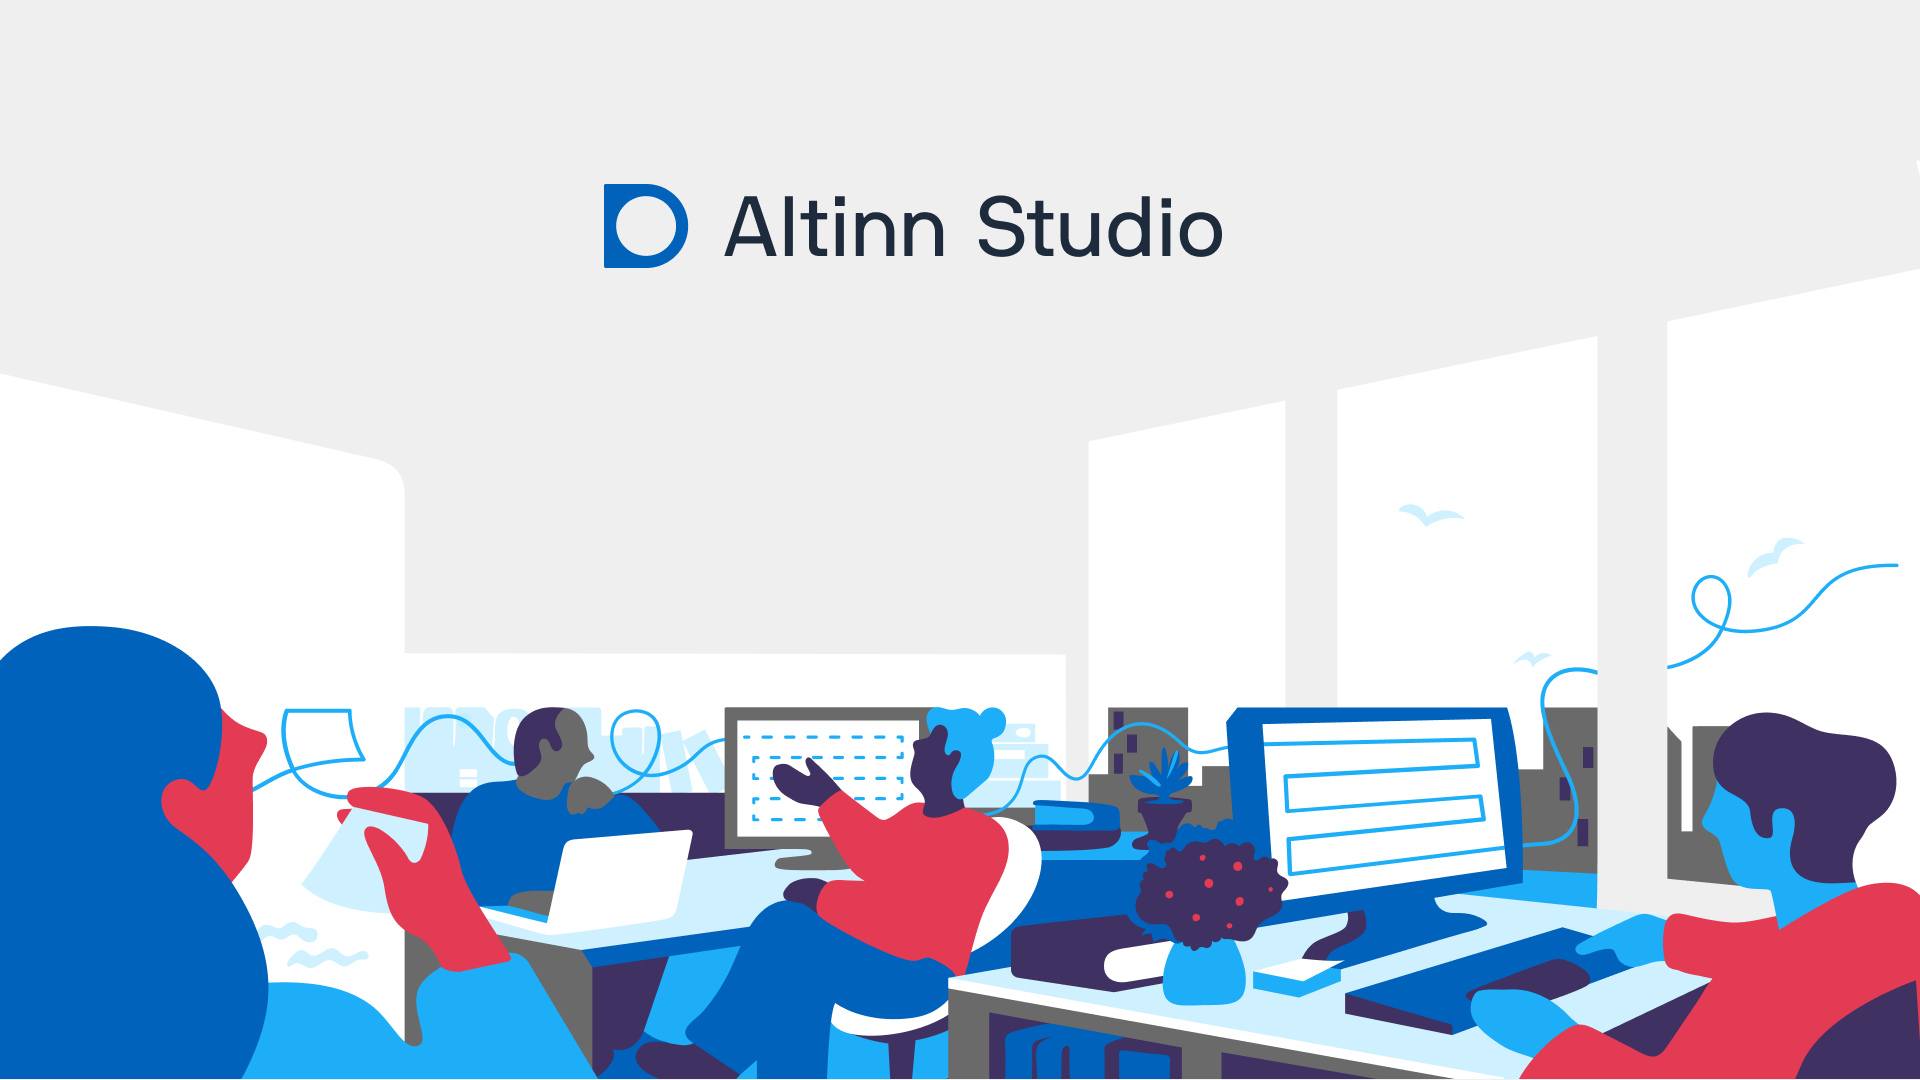 Logo og illustustrasjon av Altinn Studio. Viser mennesker som sitter ved datamaskiner i et kontorlandskap.